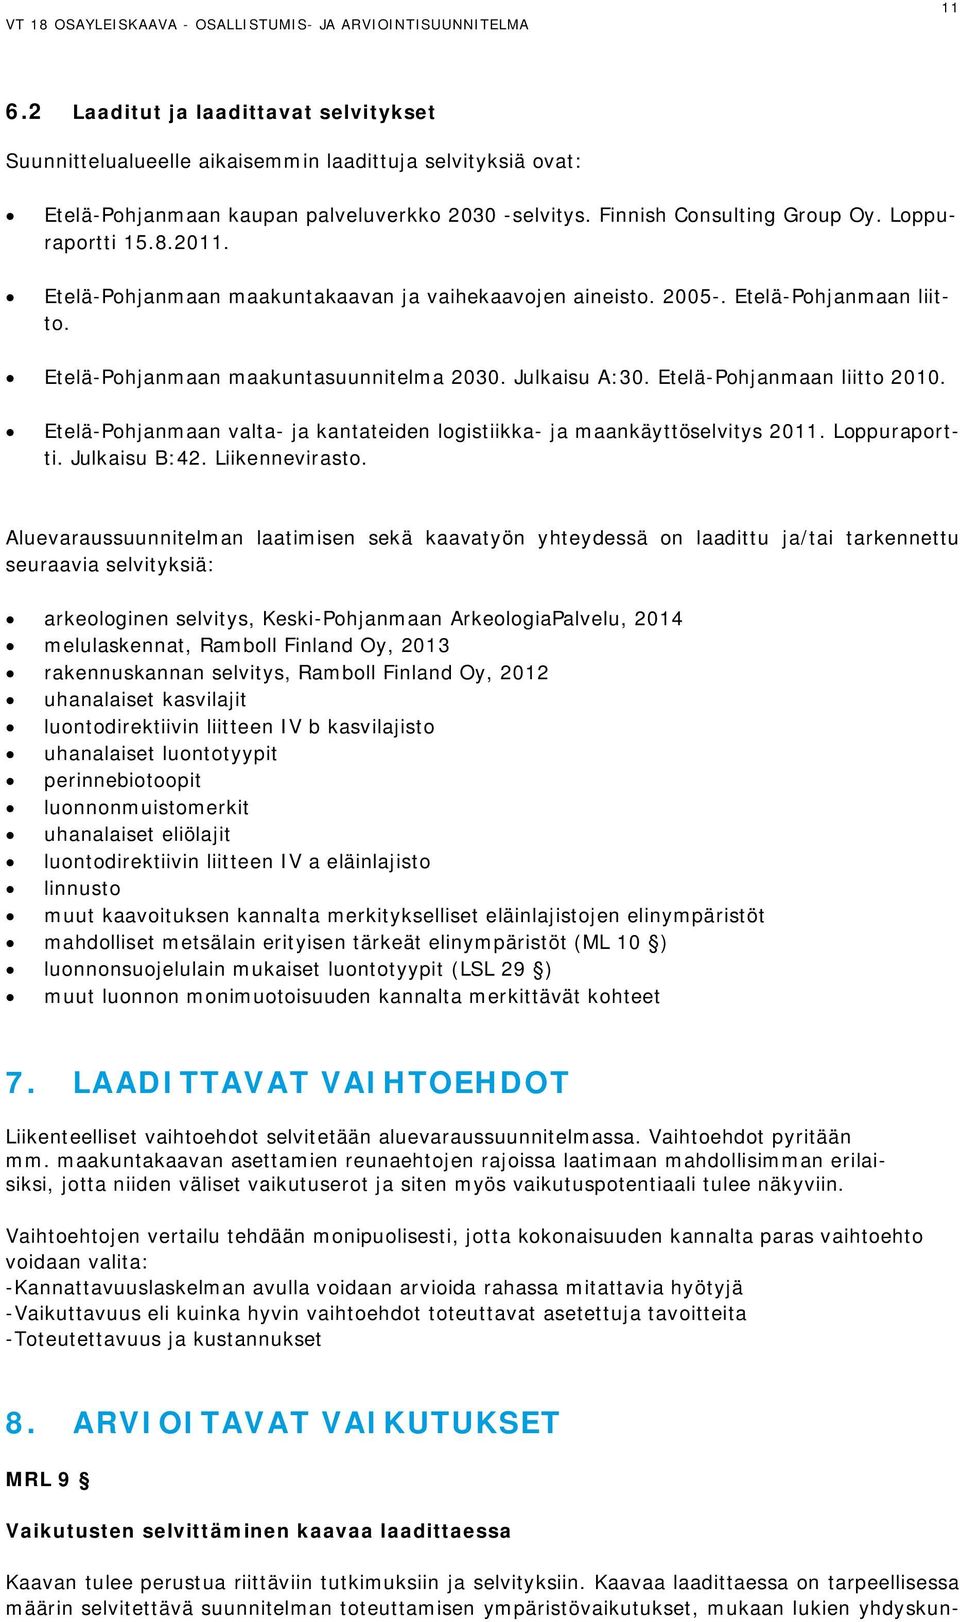 Etelä-Pohjanmaan liitto 2010. Etelä-Pohjanmaan valta- ja kantateiden logistiikka- ja maankäyttöselvitys 2011. Loppuraportti. Julkaisu B:42. Liikennevirasto.